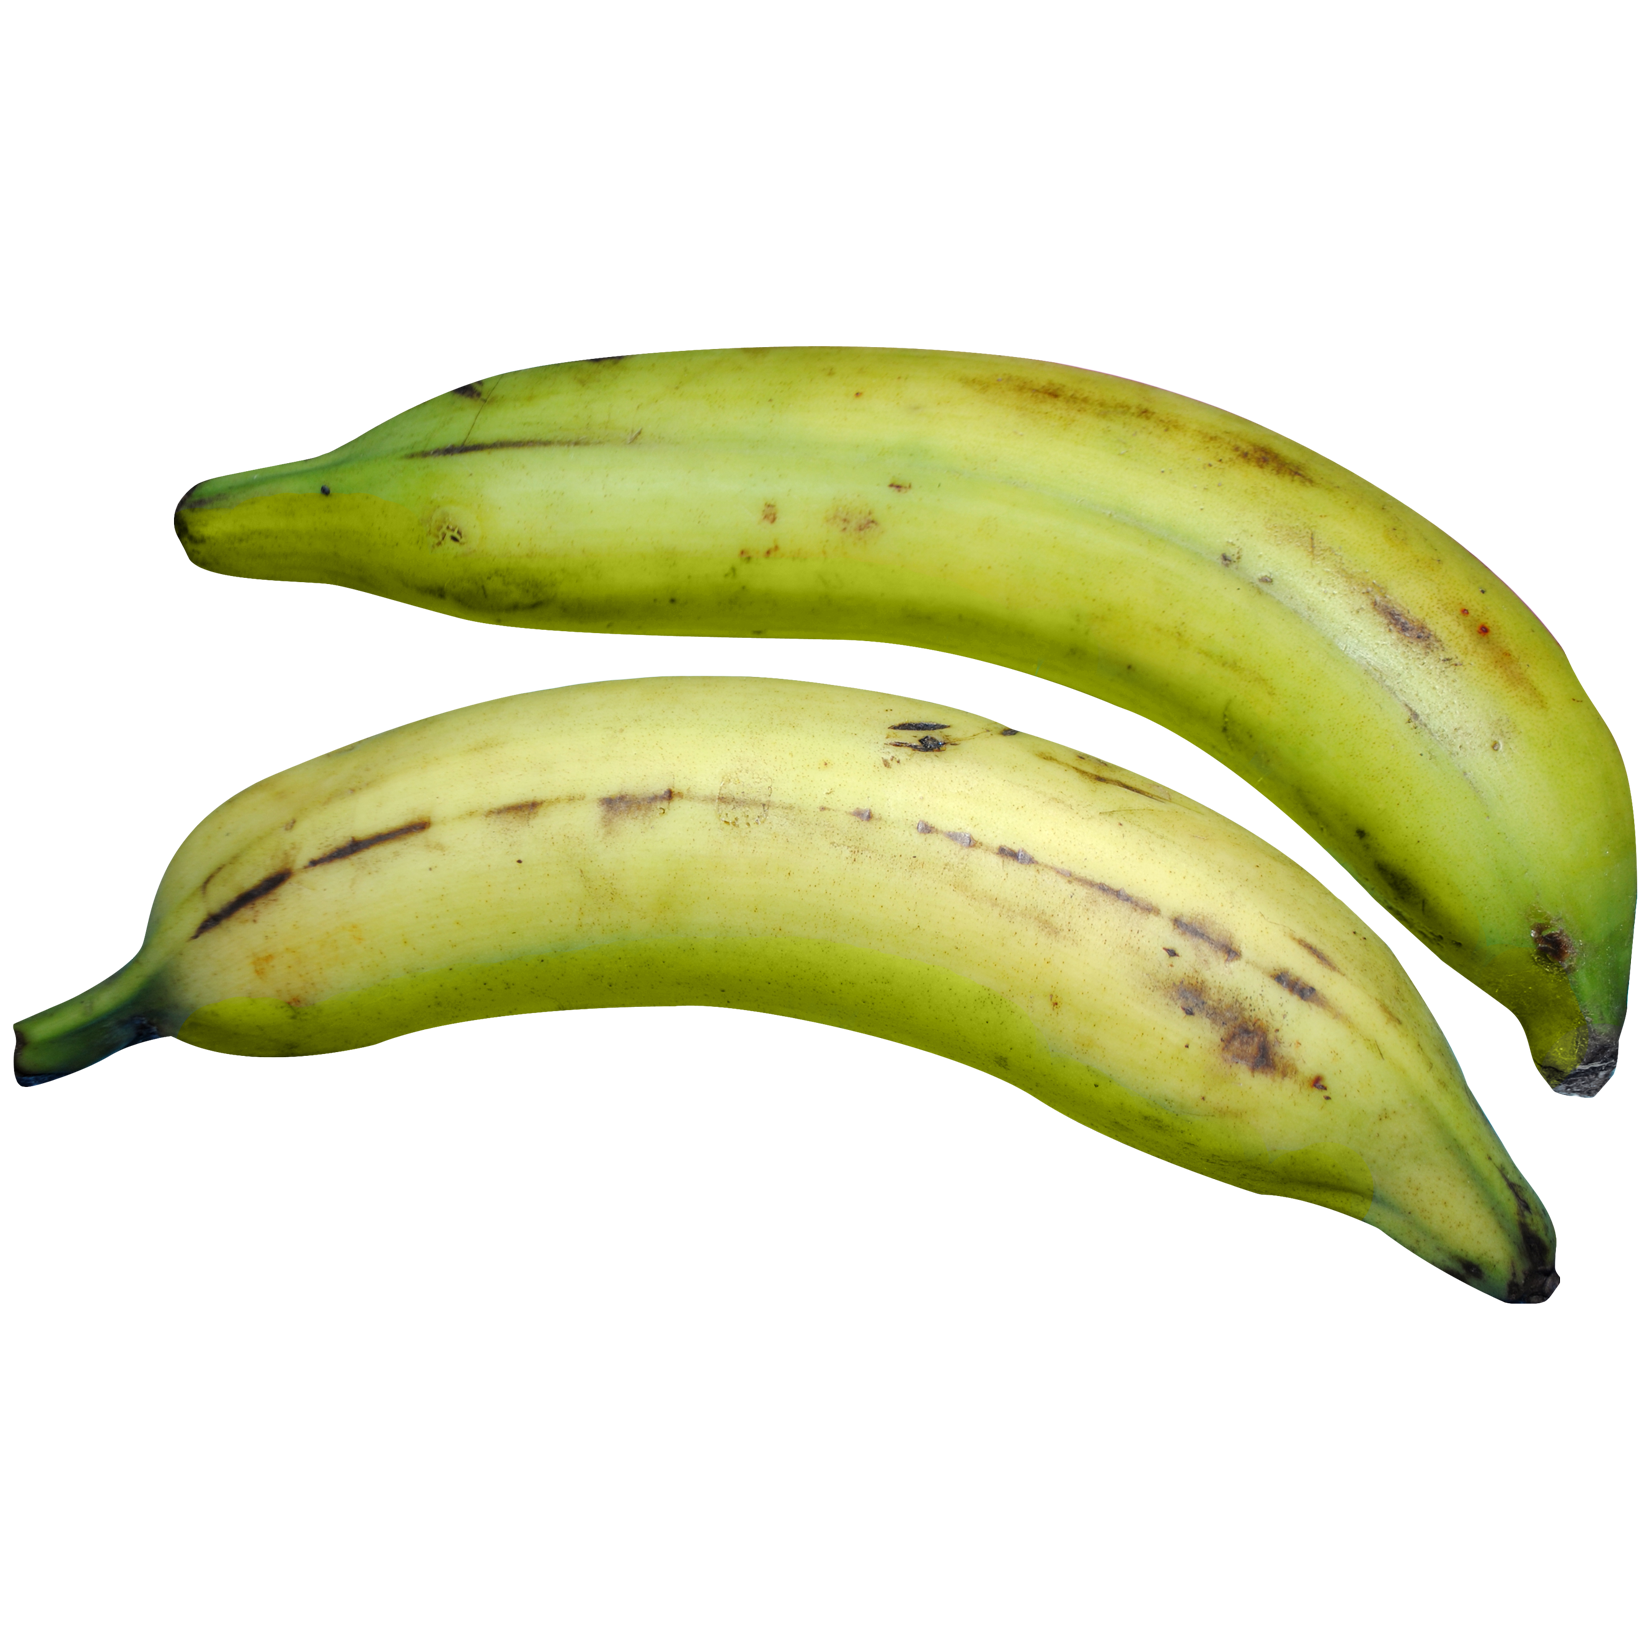 Green Banana Transparent Image